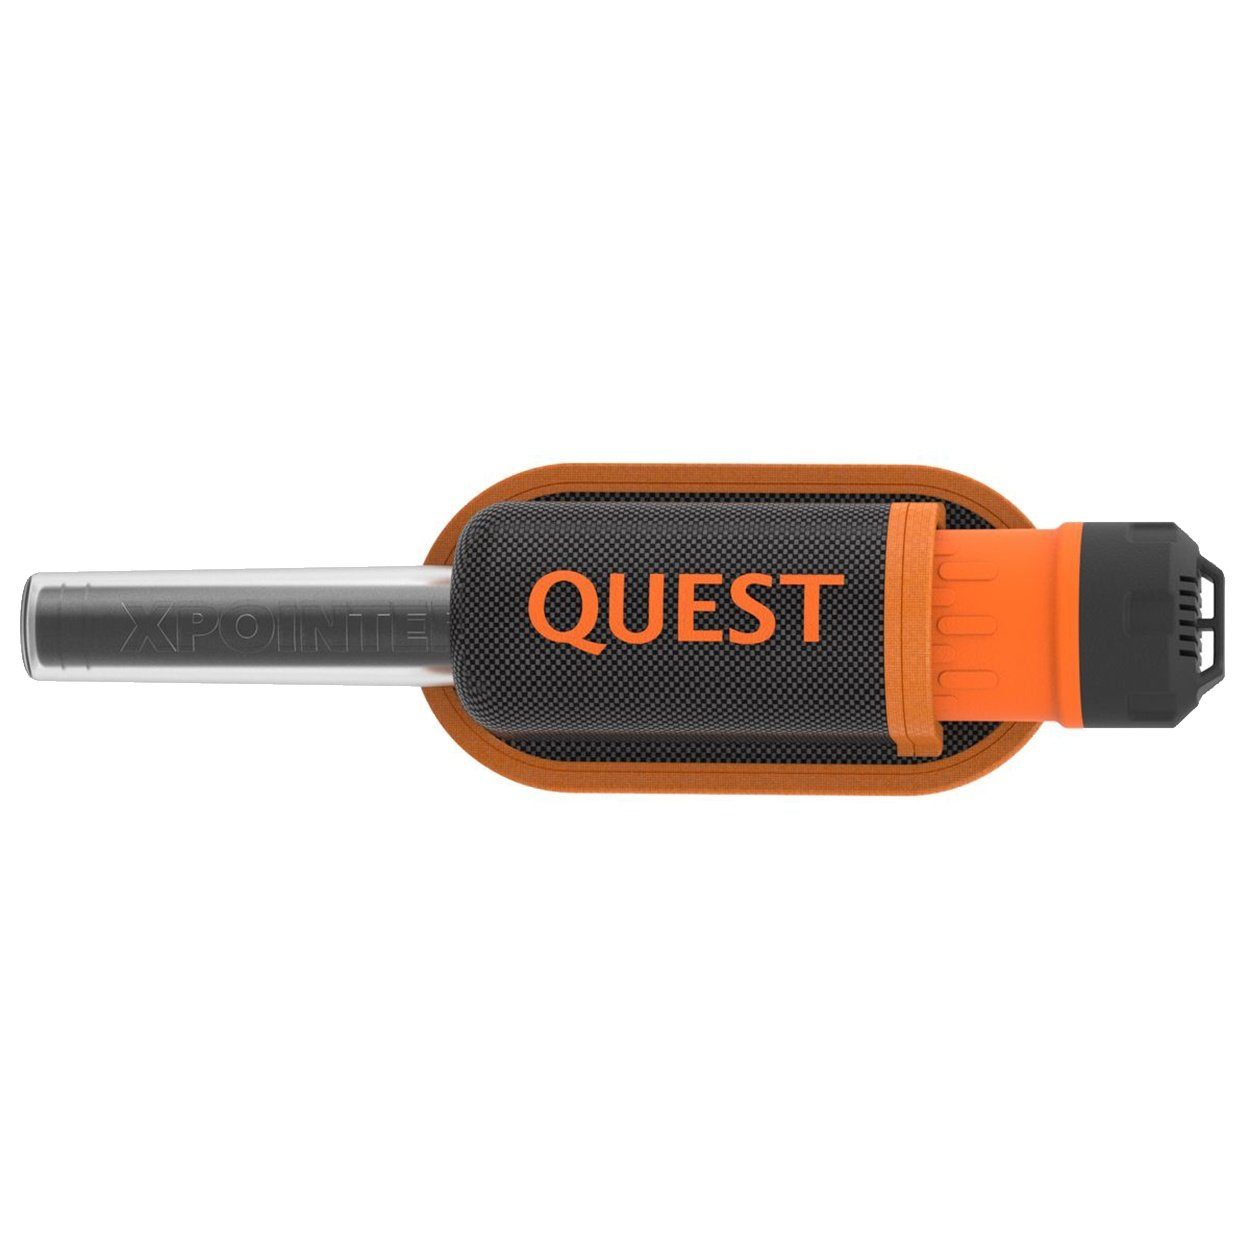 wasserdicht, gute Quest Pinpointer, akku, Metalldetektor Suchleistung II XPointer Quest